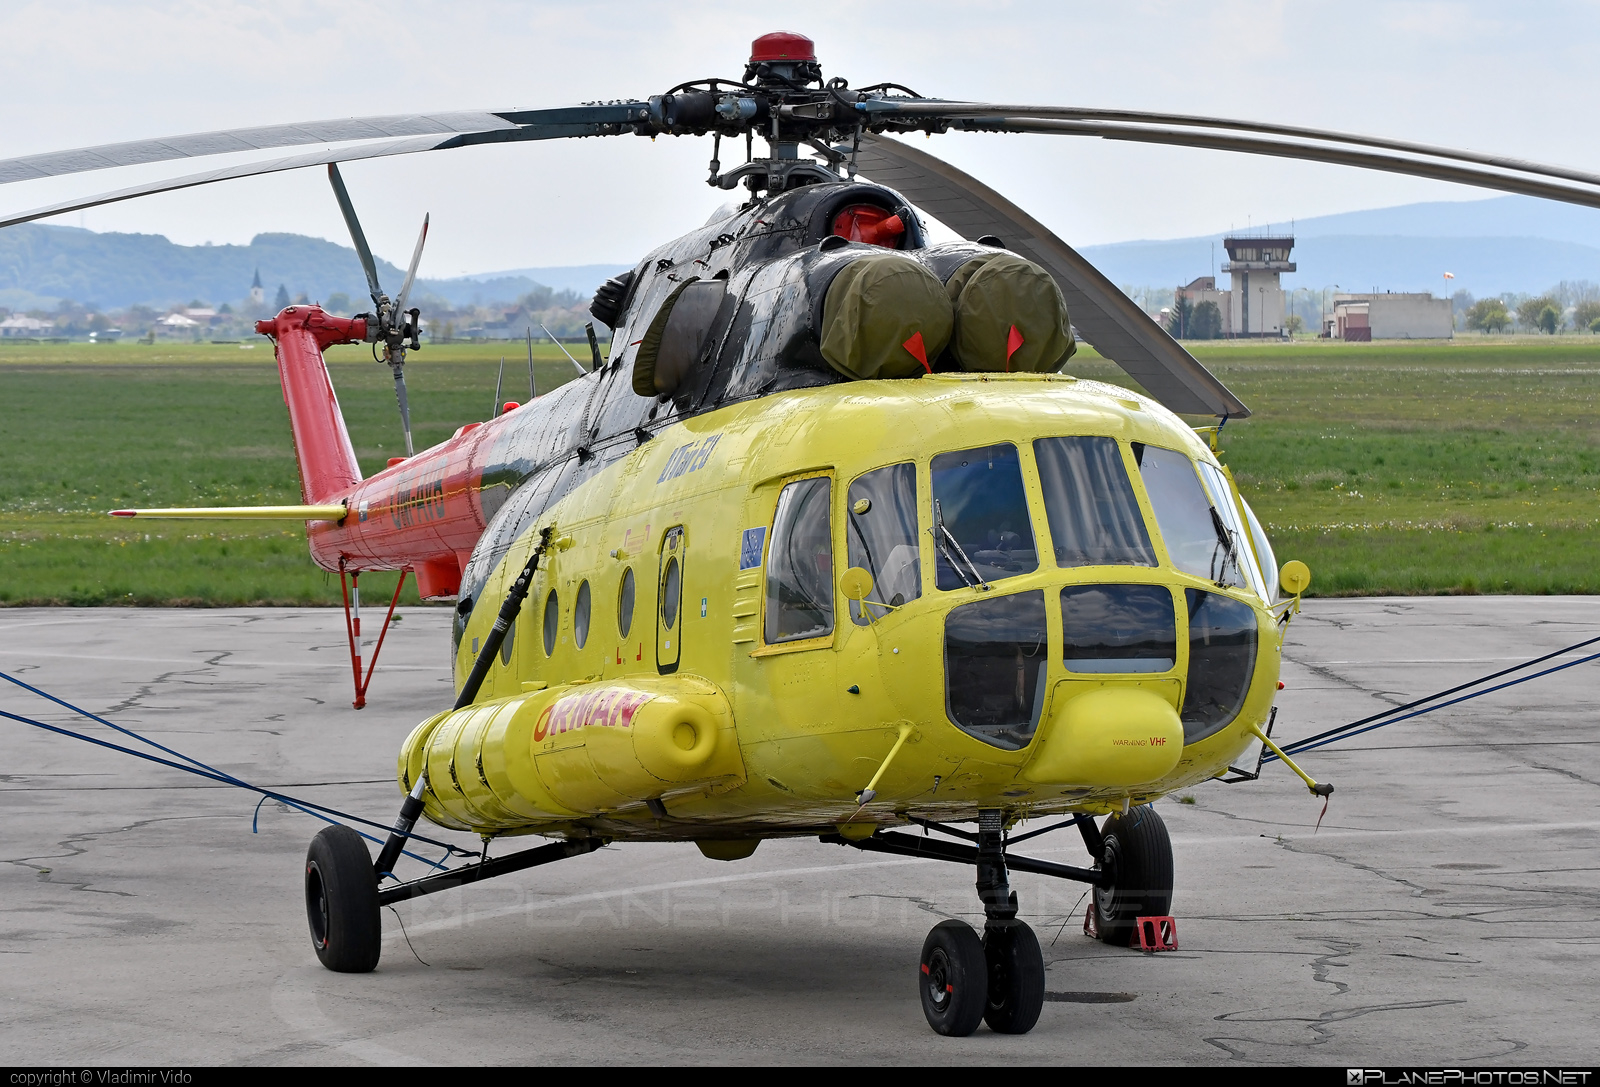 Mil Mi-8MTV-1 - OM-AVB operated by UTair Europe #mi8 #mi8mtv1 #mil #milhelicopters #milmi8 #milmi8mtv1 #utair #utaireurope